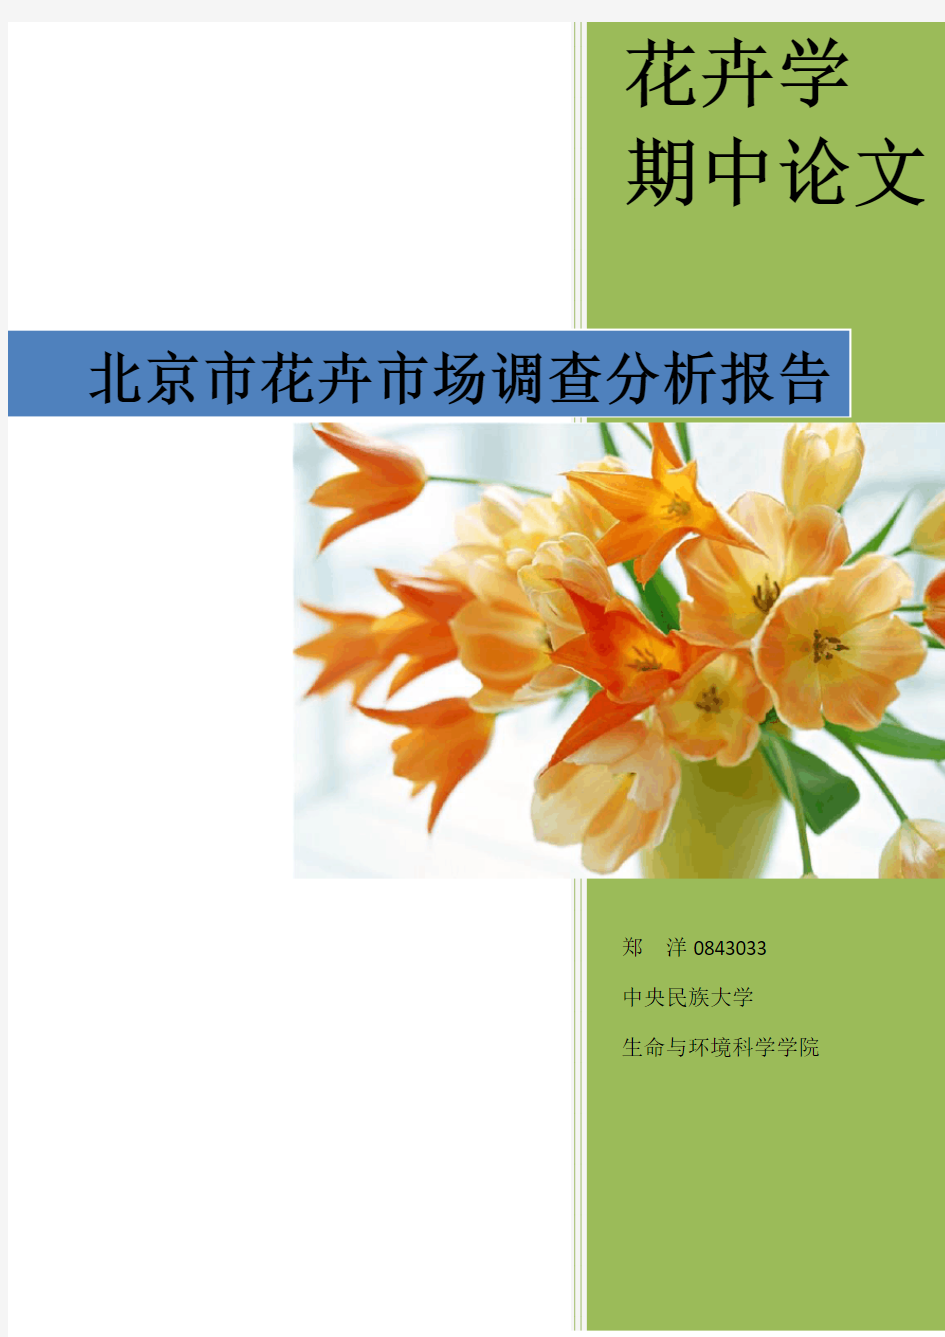 北京市花卉市场调查分析报告